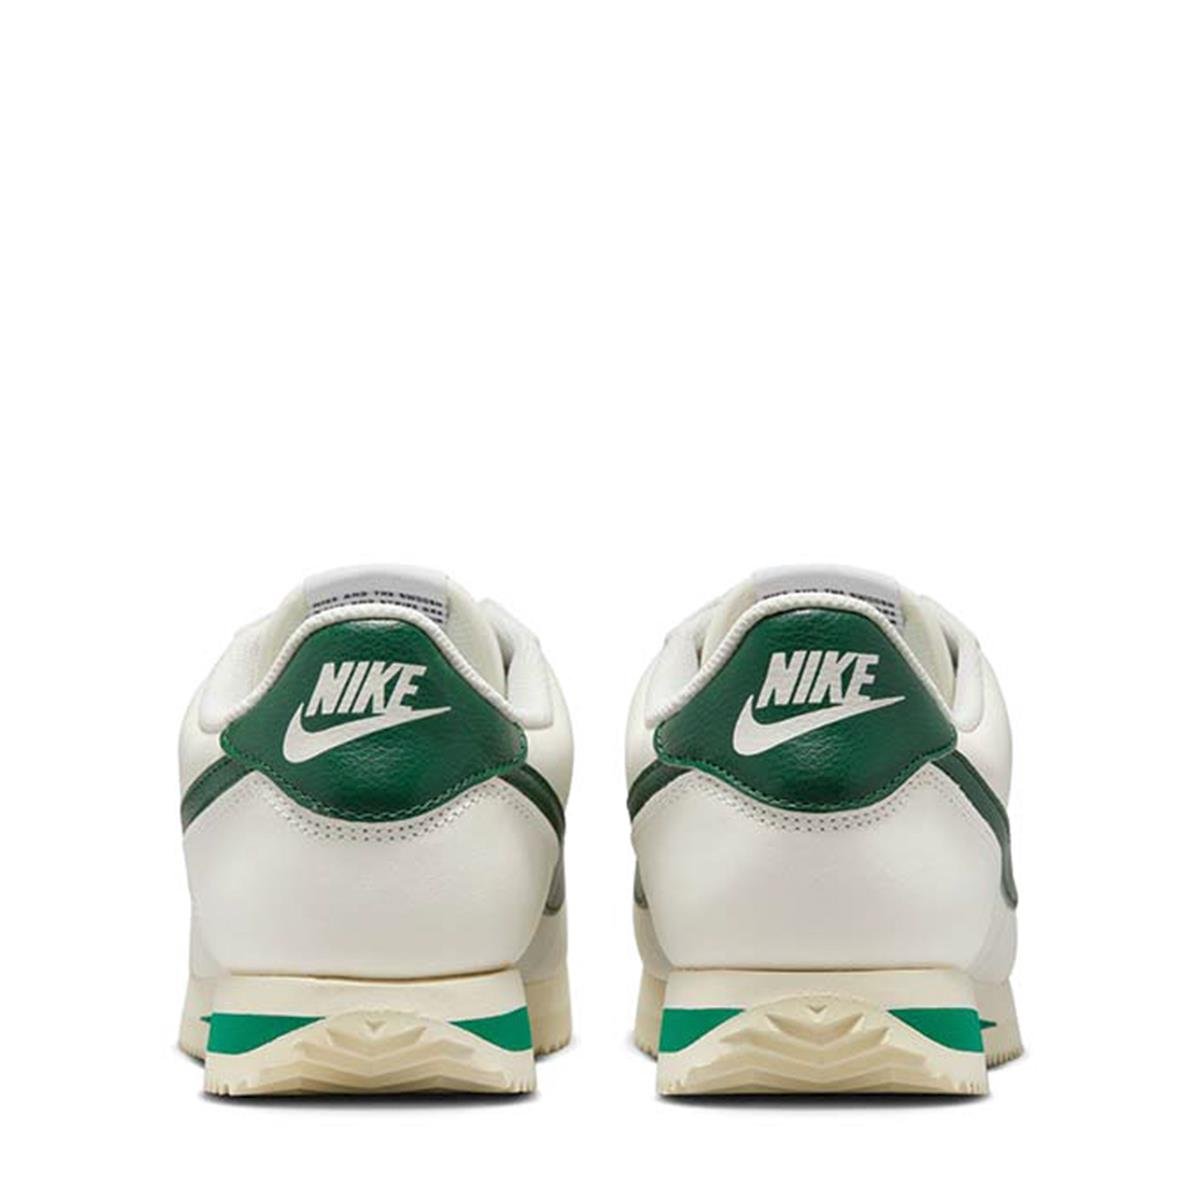 Kadın Spor Ayakkabı DN1791-101 Nike Cortez Sail-Gorge Green-Malachite